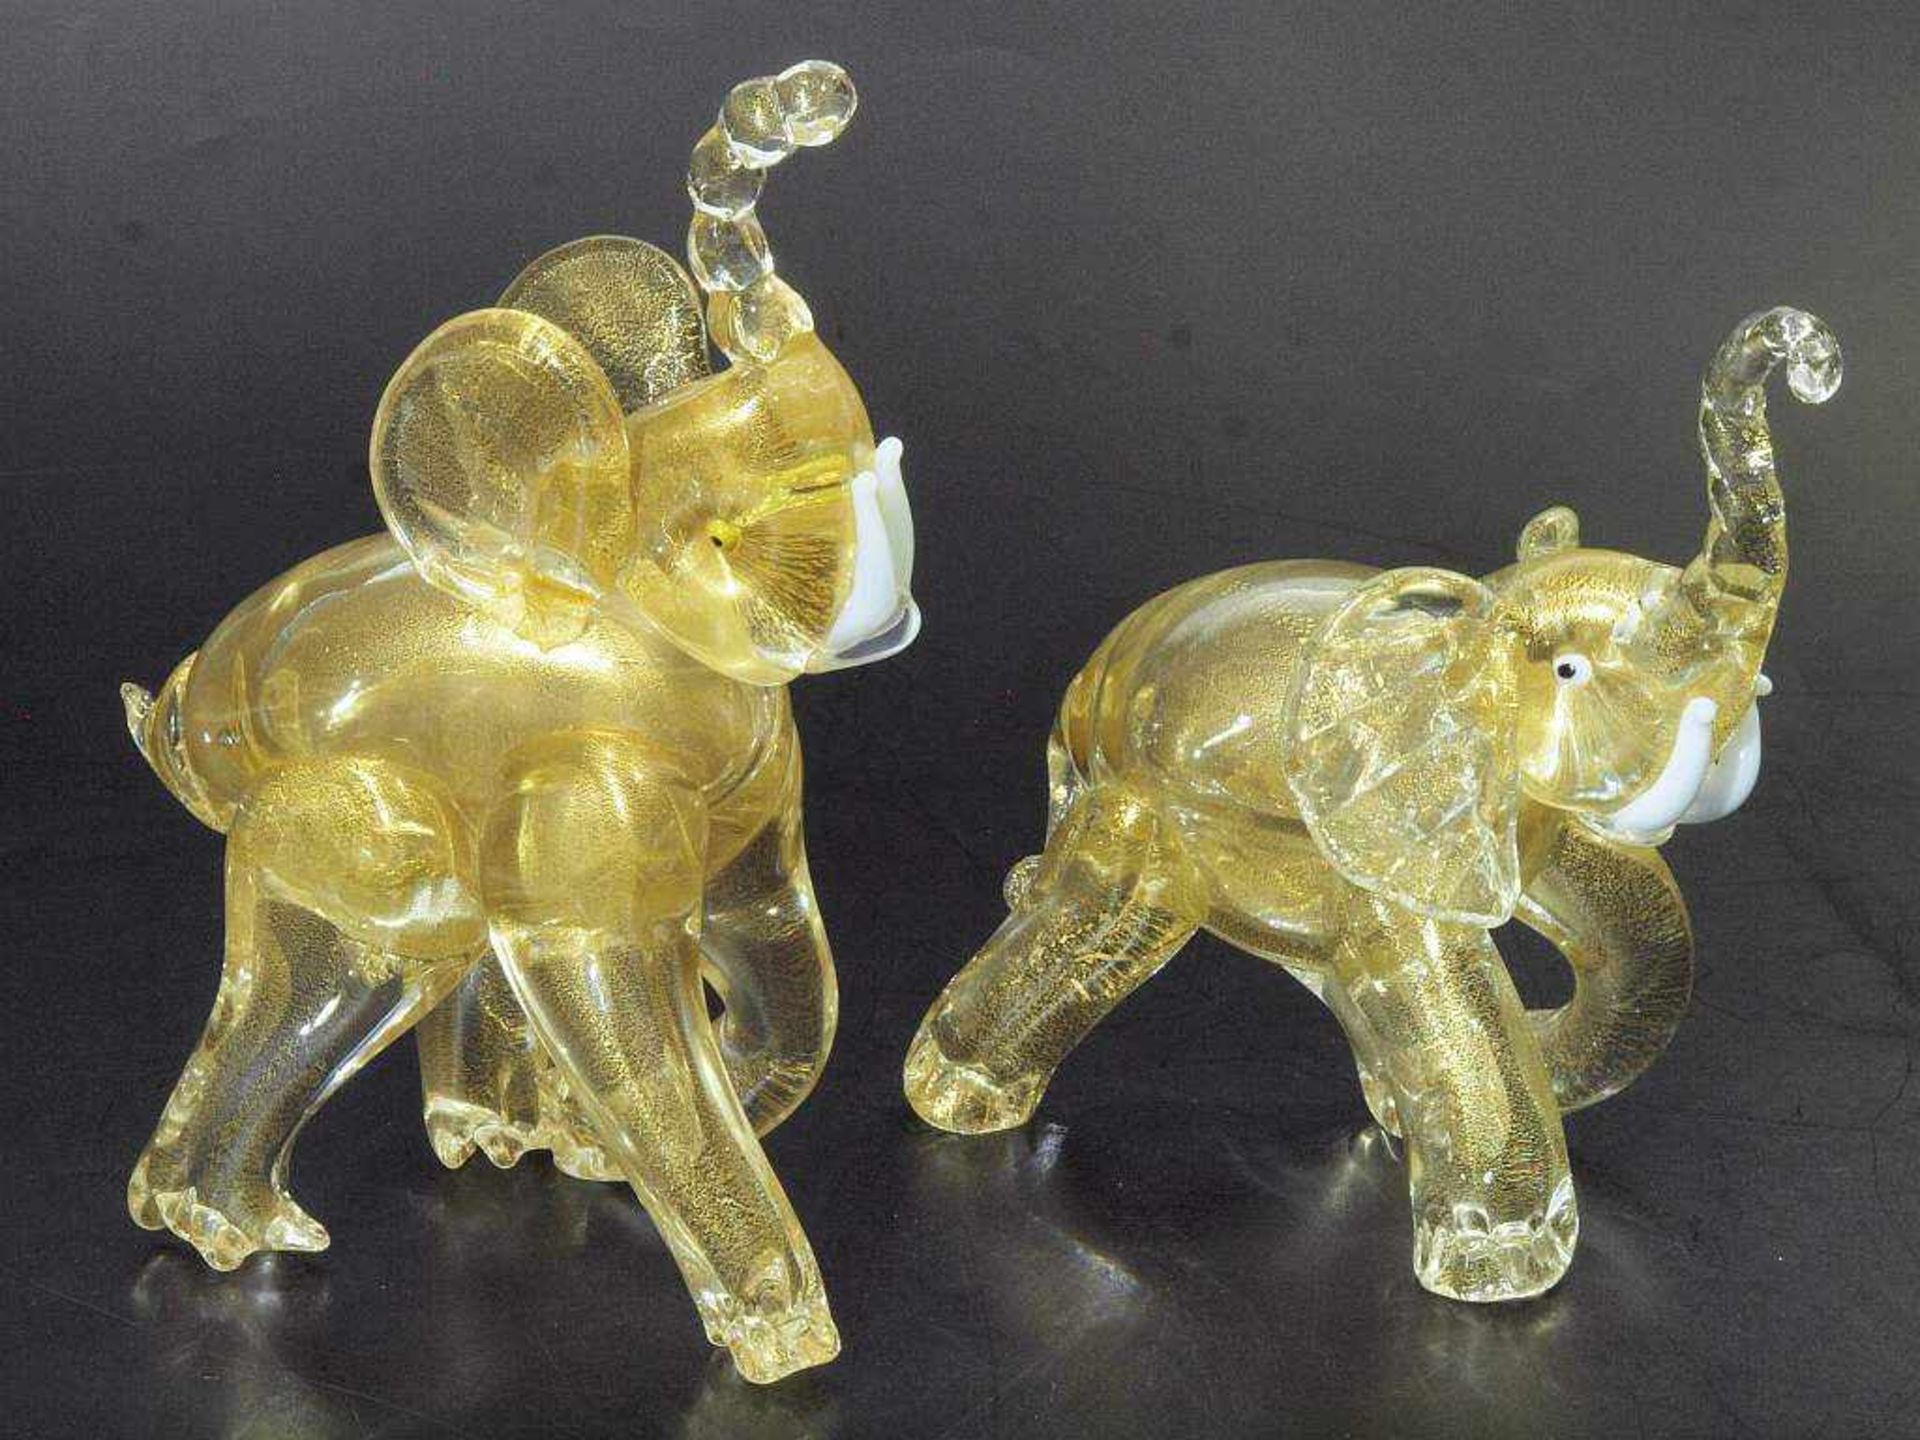 Zwei Tierplastiken "Elefant", Murano. Zwei Tierplastiken "Elefant", Murano. 20. Jahrhundert. - Bild 2 aus 6